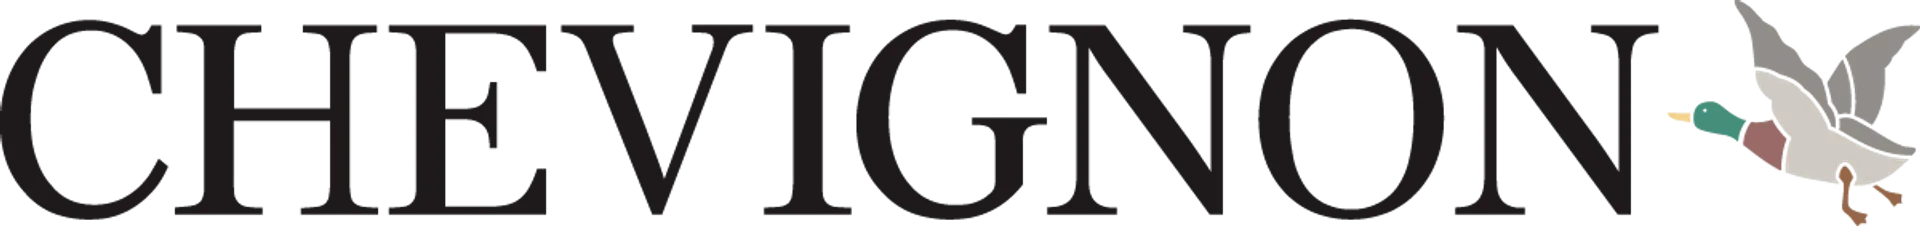 CHEVIGNON logo